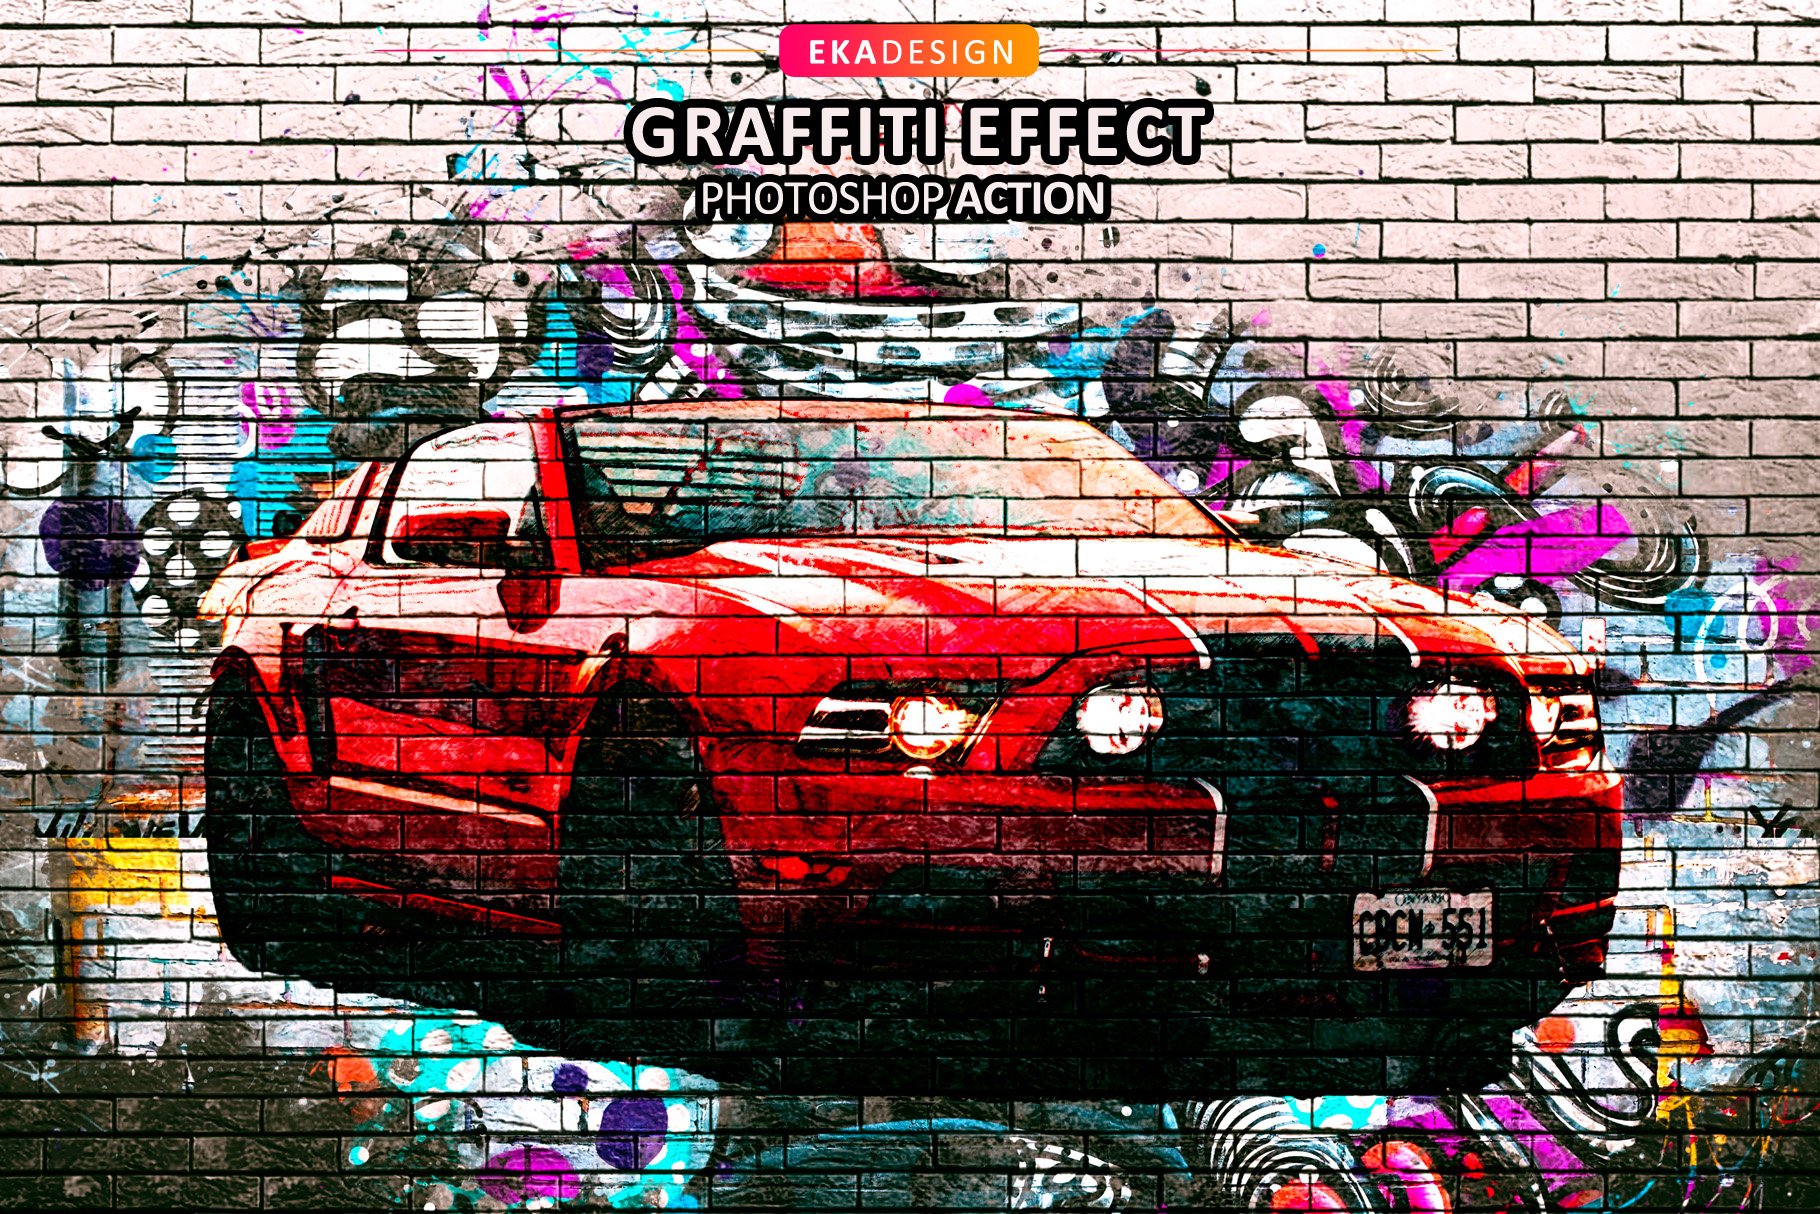 Graffiti Effect Vol 2cover image.